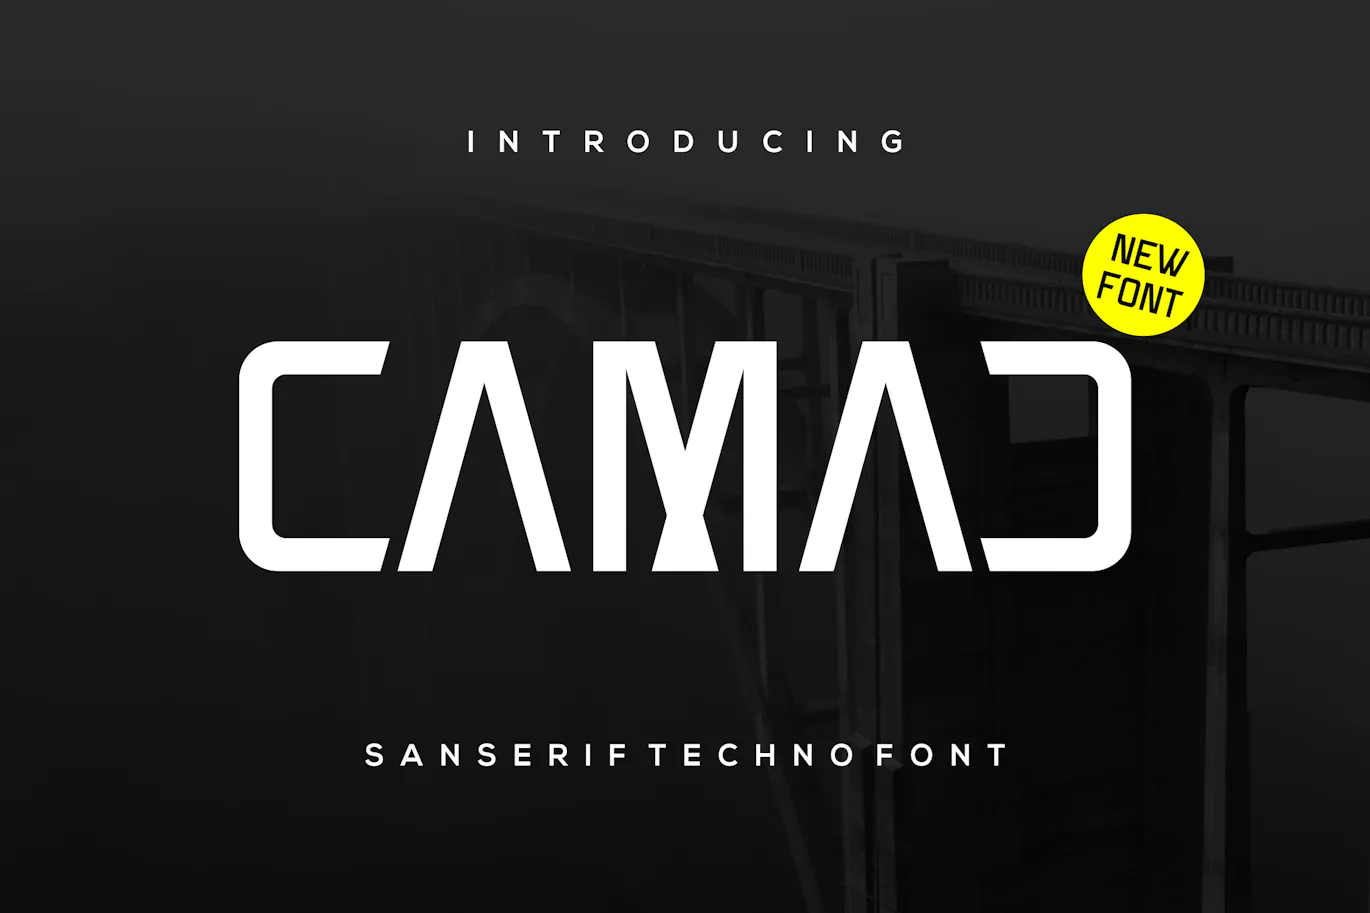 极简科技风格的英文无衬线电竞字体 - Camad